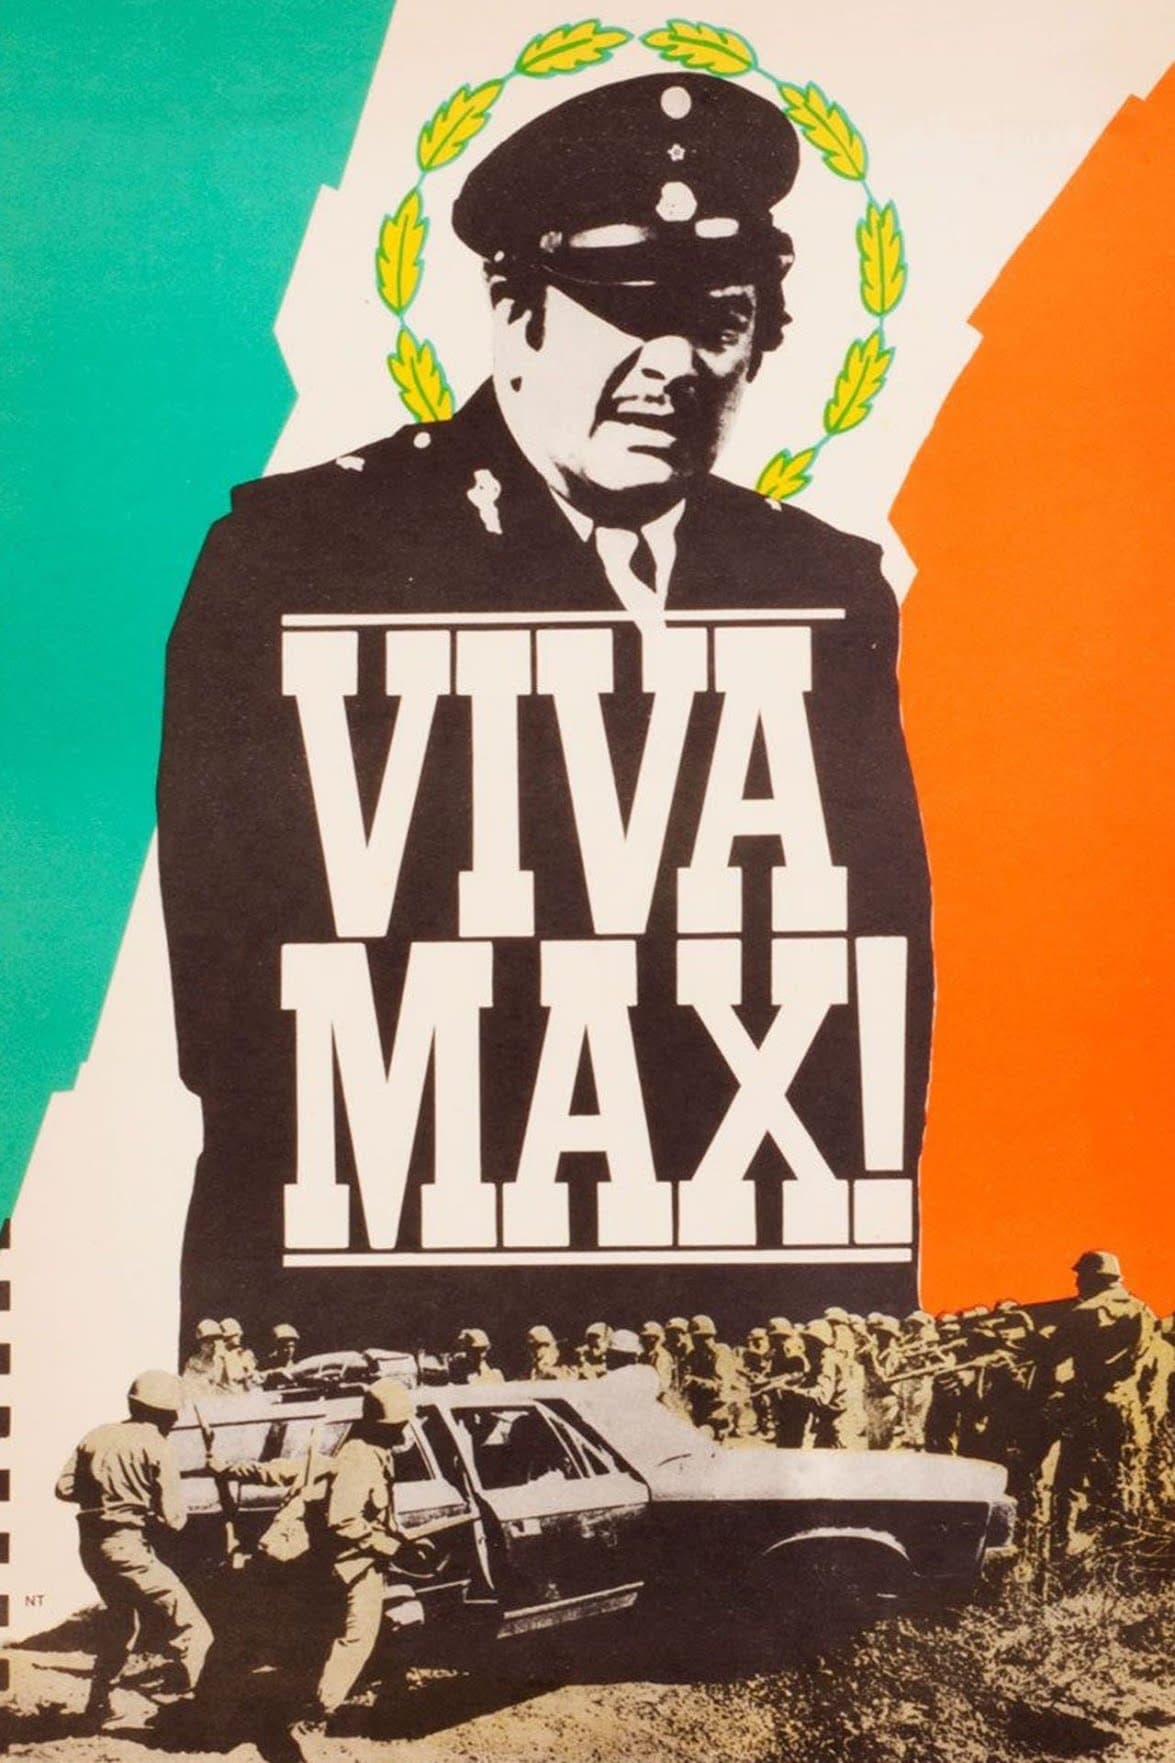 Viva Max! (1969)